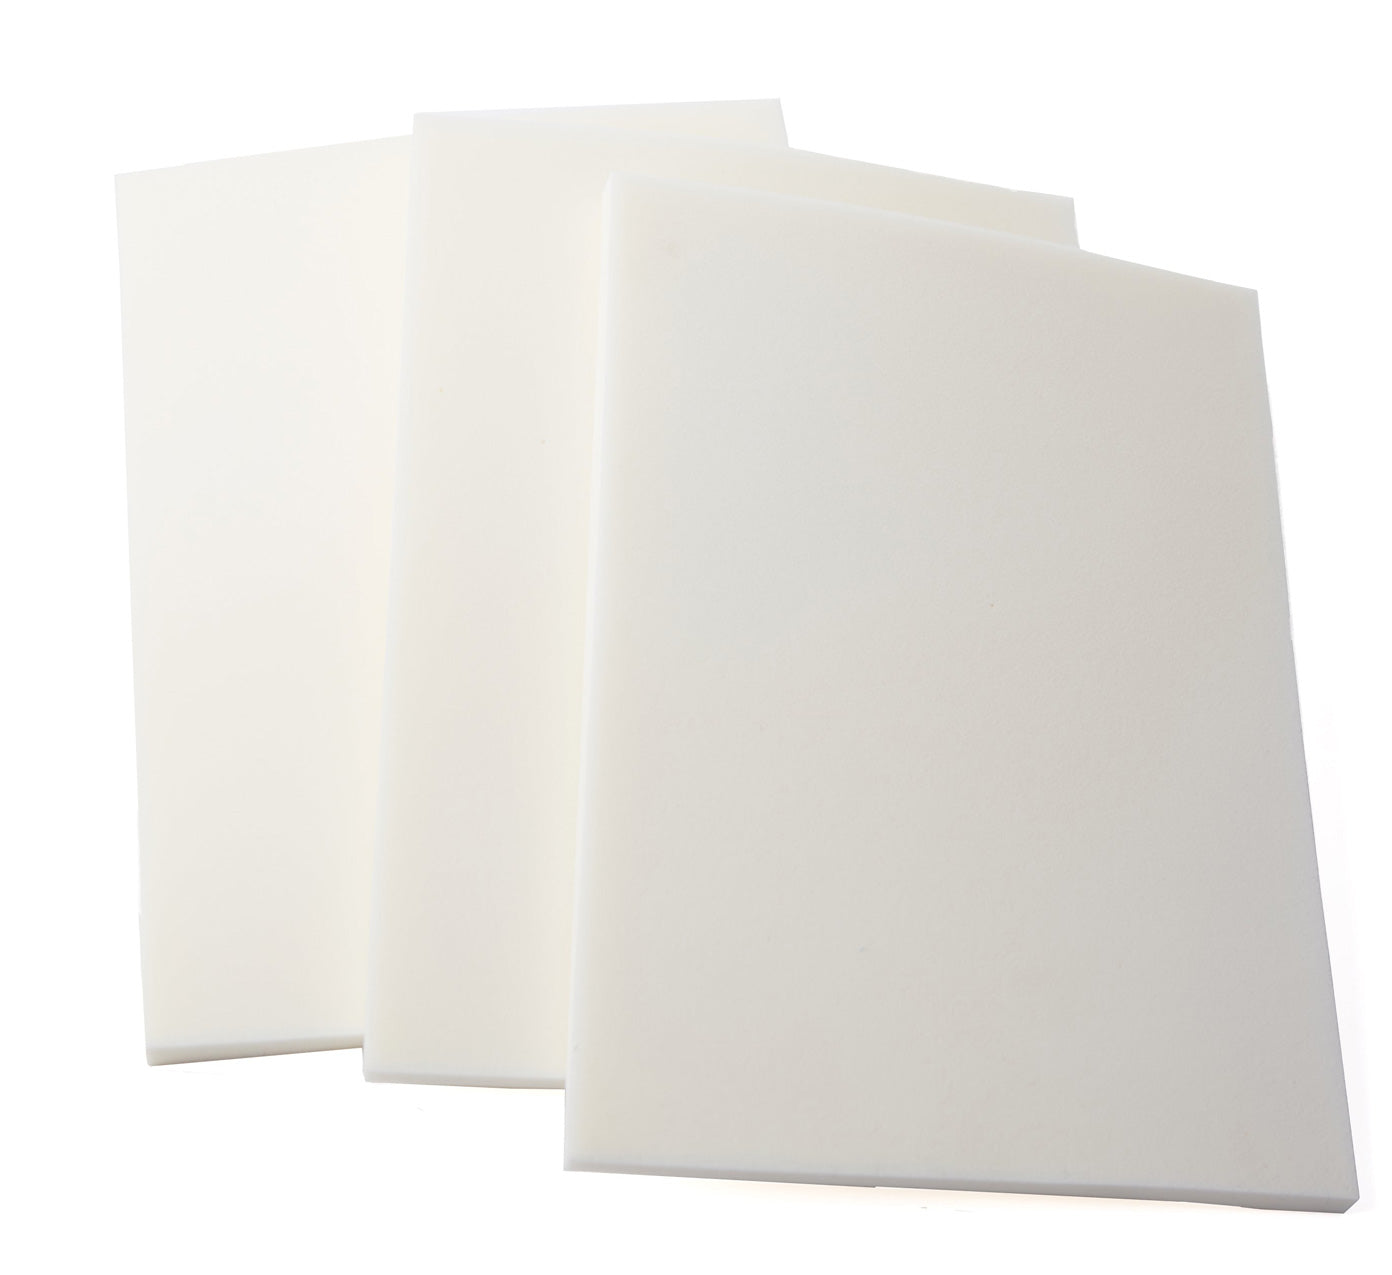 Lipo Foam Sheet 3 Pack #913